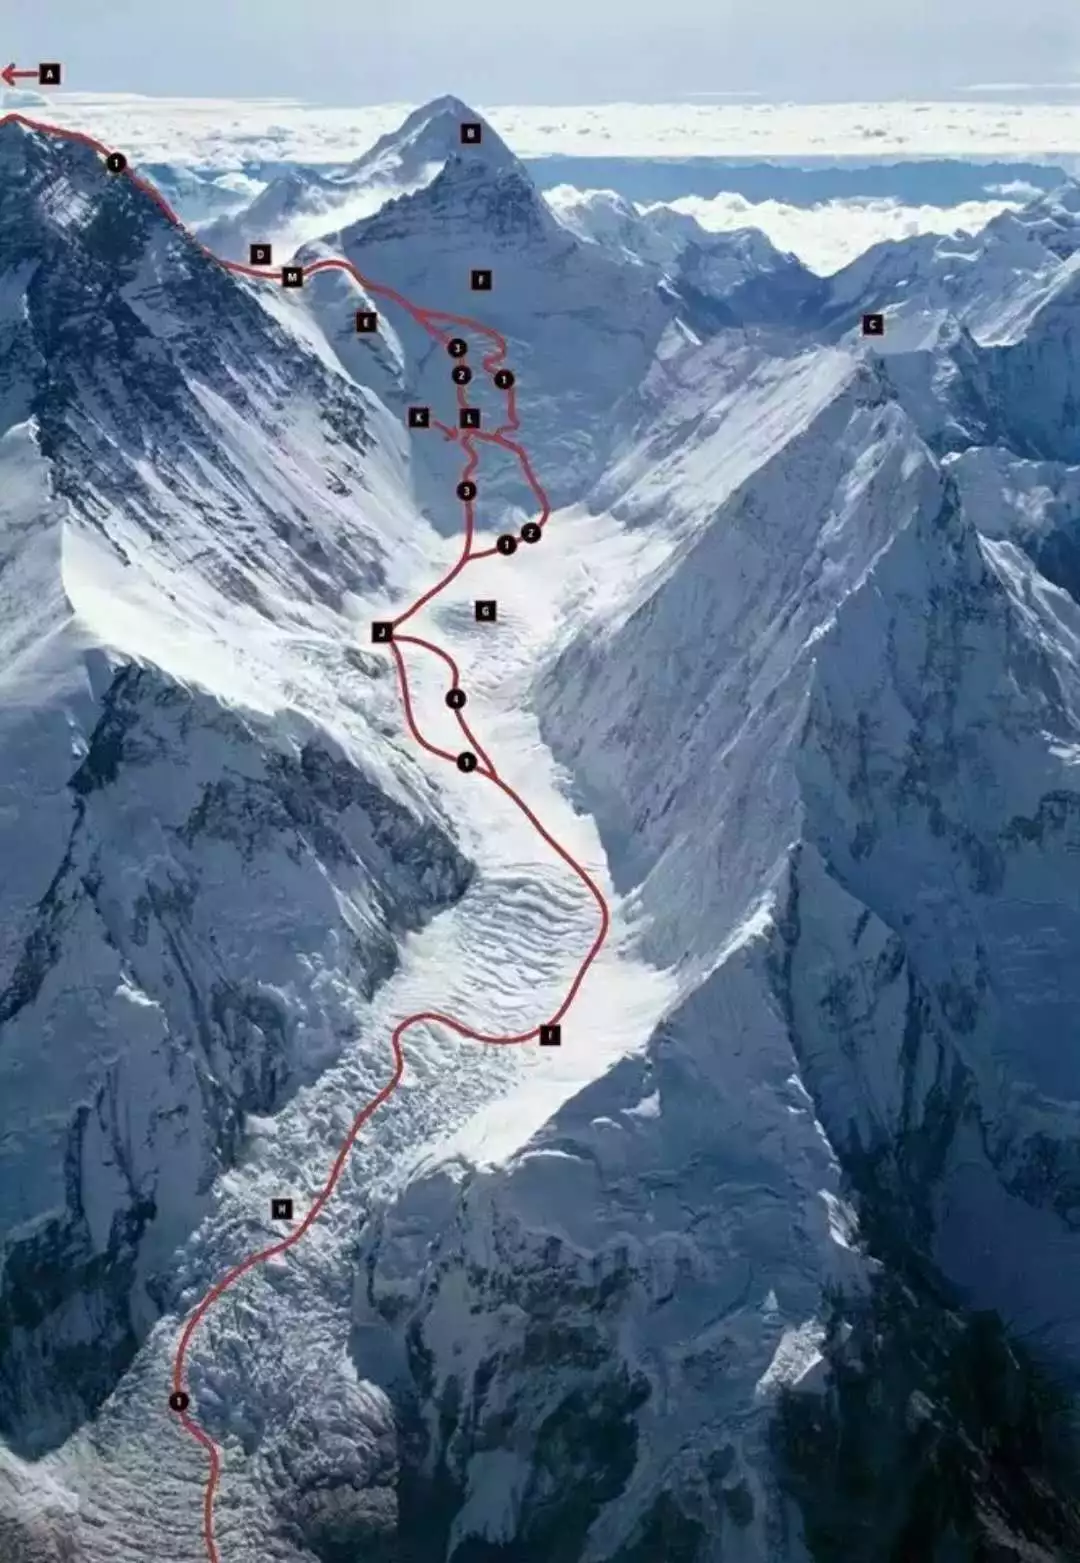 珠峰三大台阶示意图图片